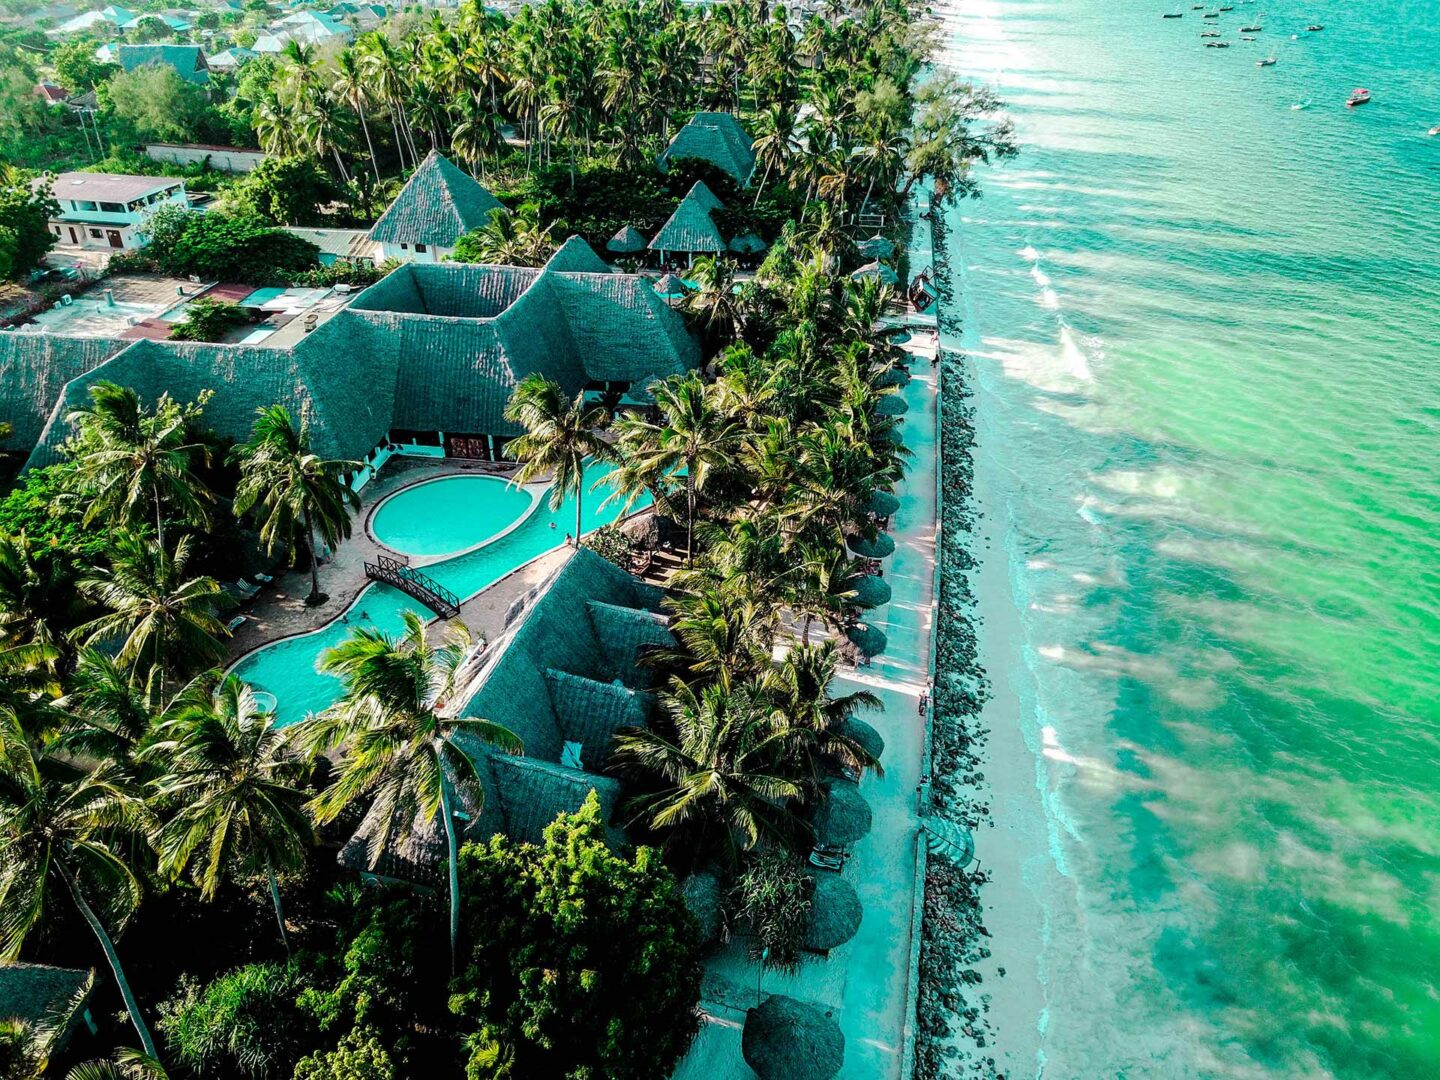 Uroa Bay Beach Resort | Zanzibar - World Leisure holidays | Tour Operator